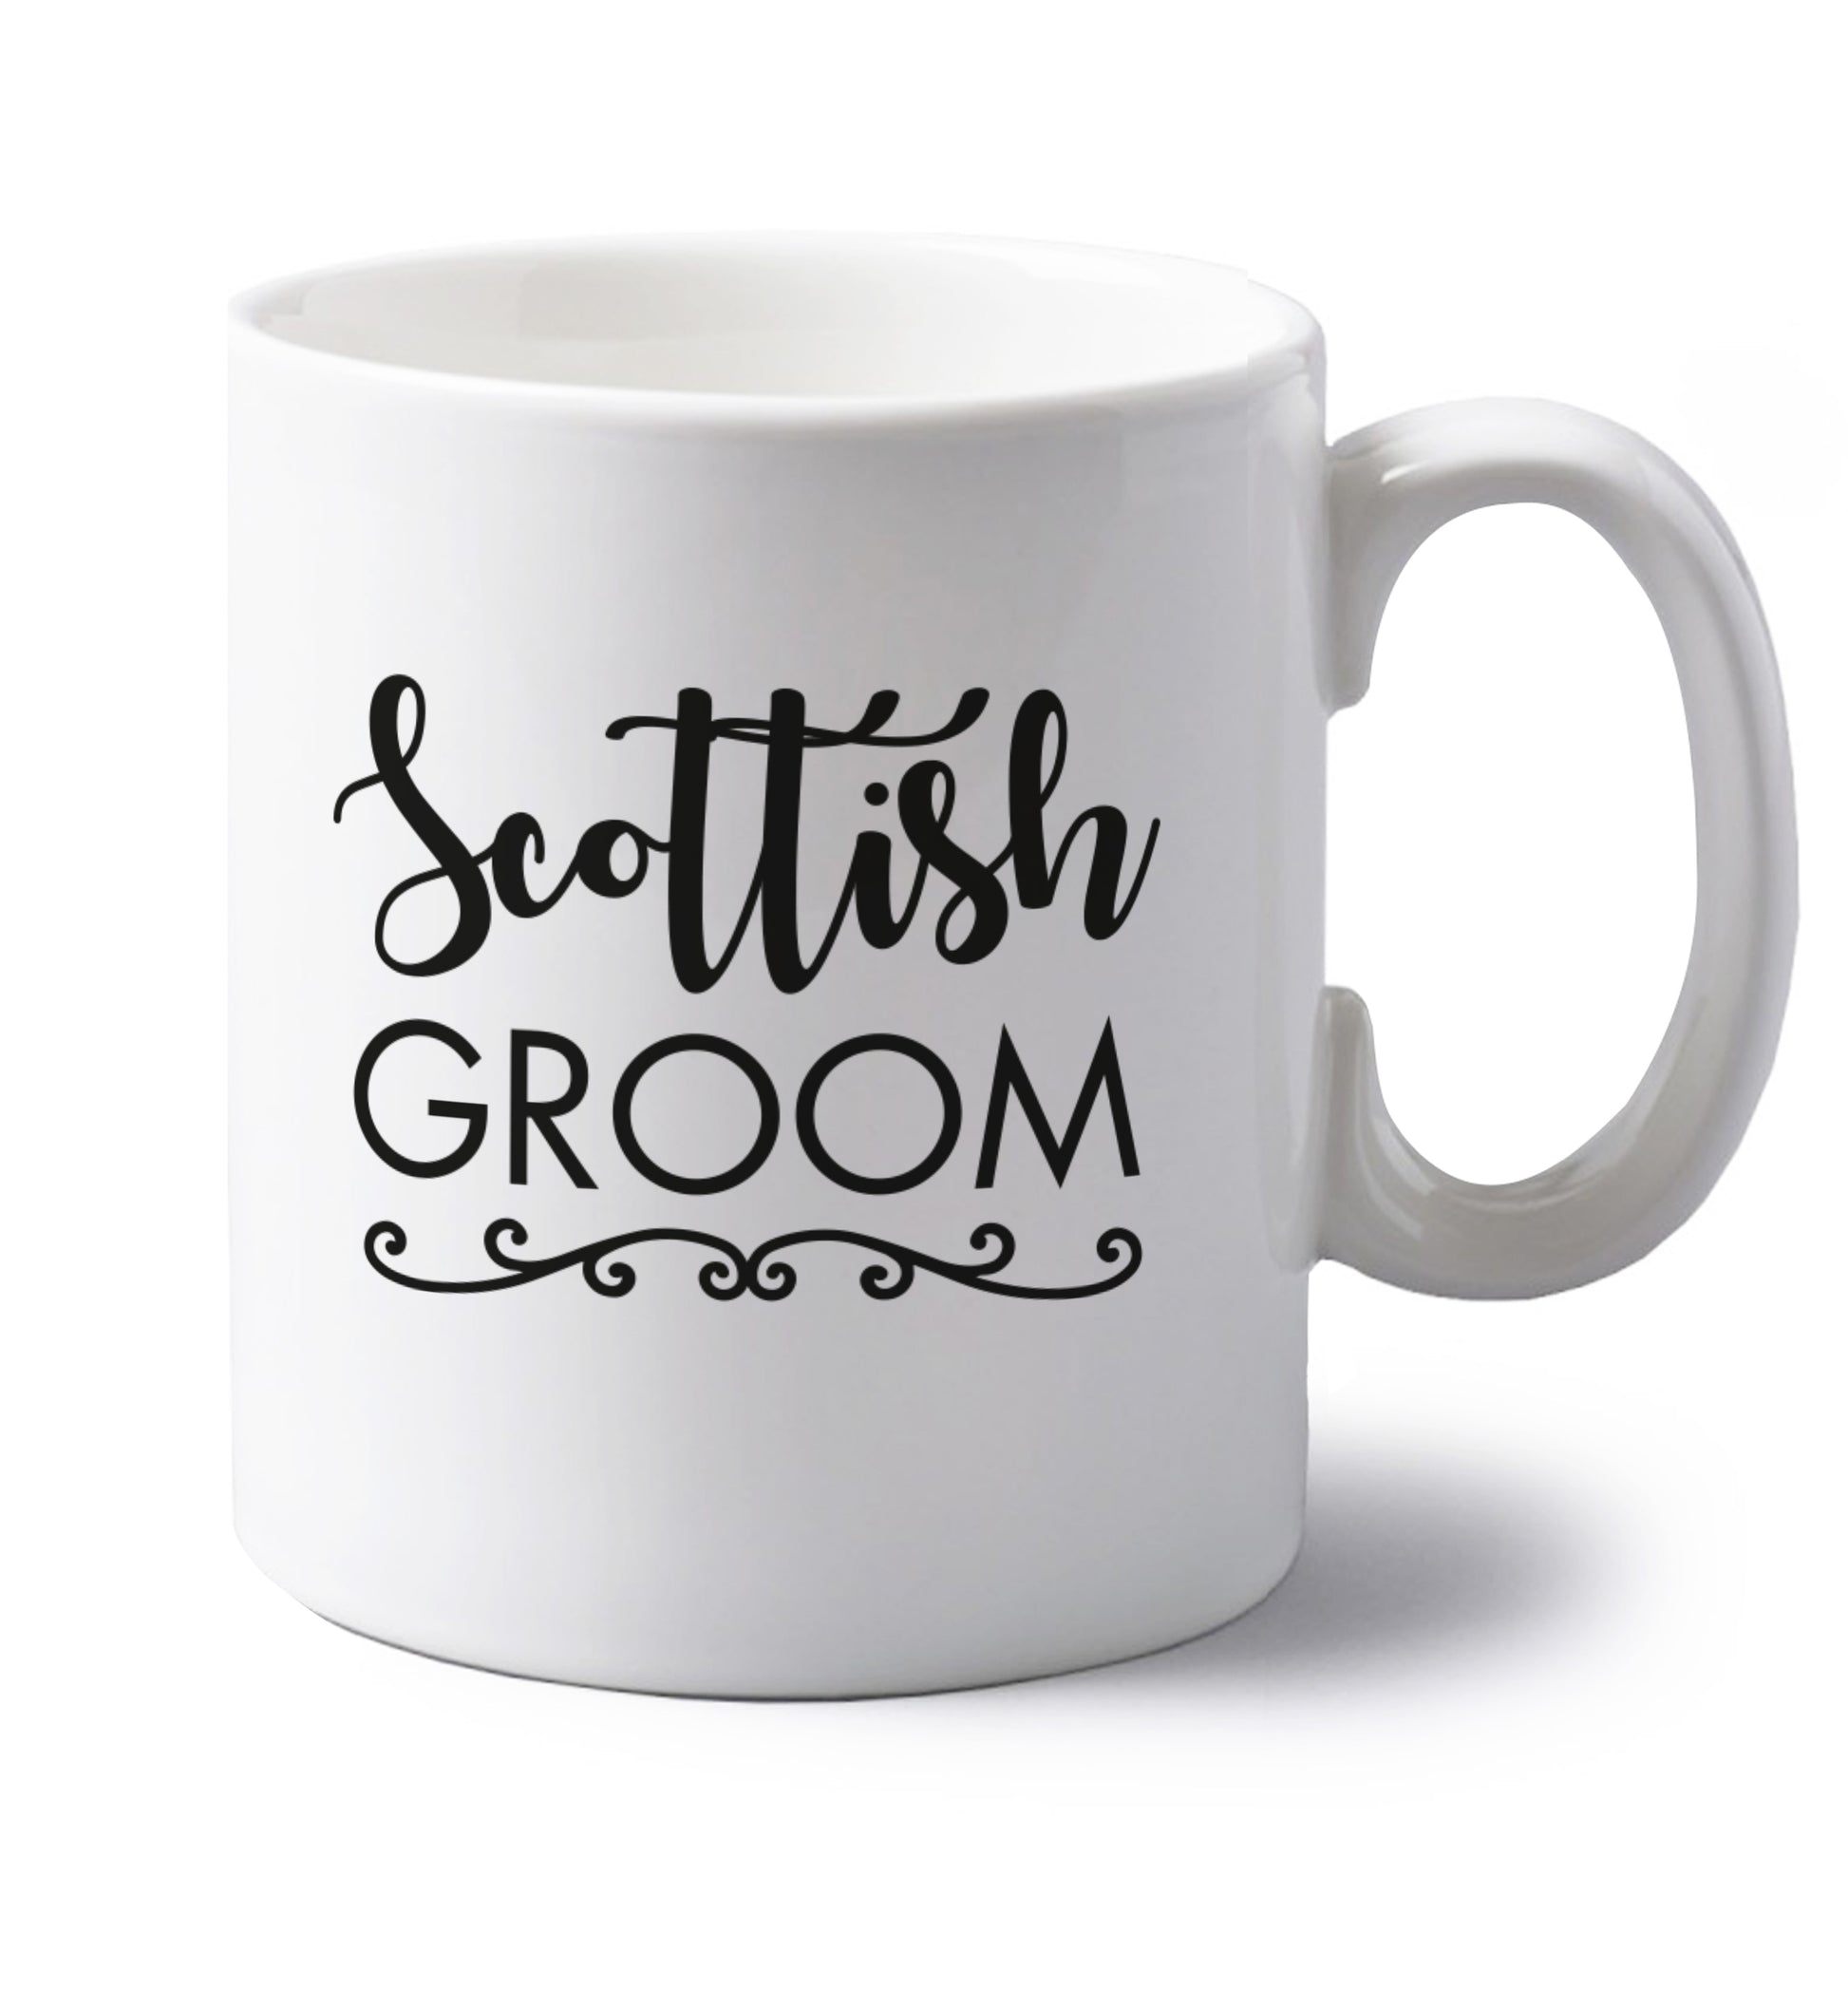 Scottish groom left handed white ceramic mug 